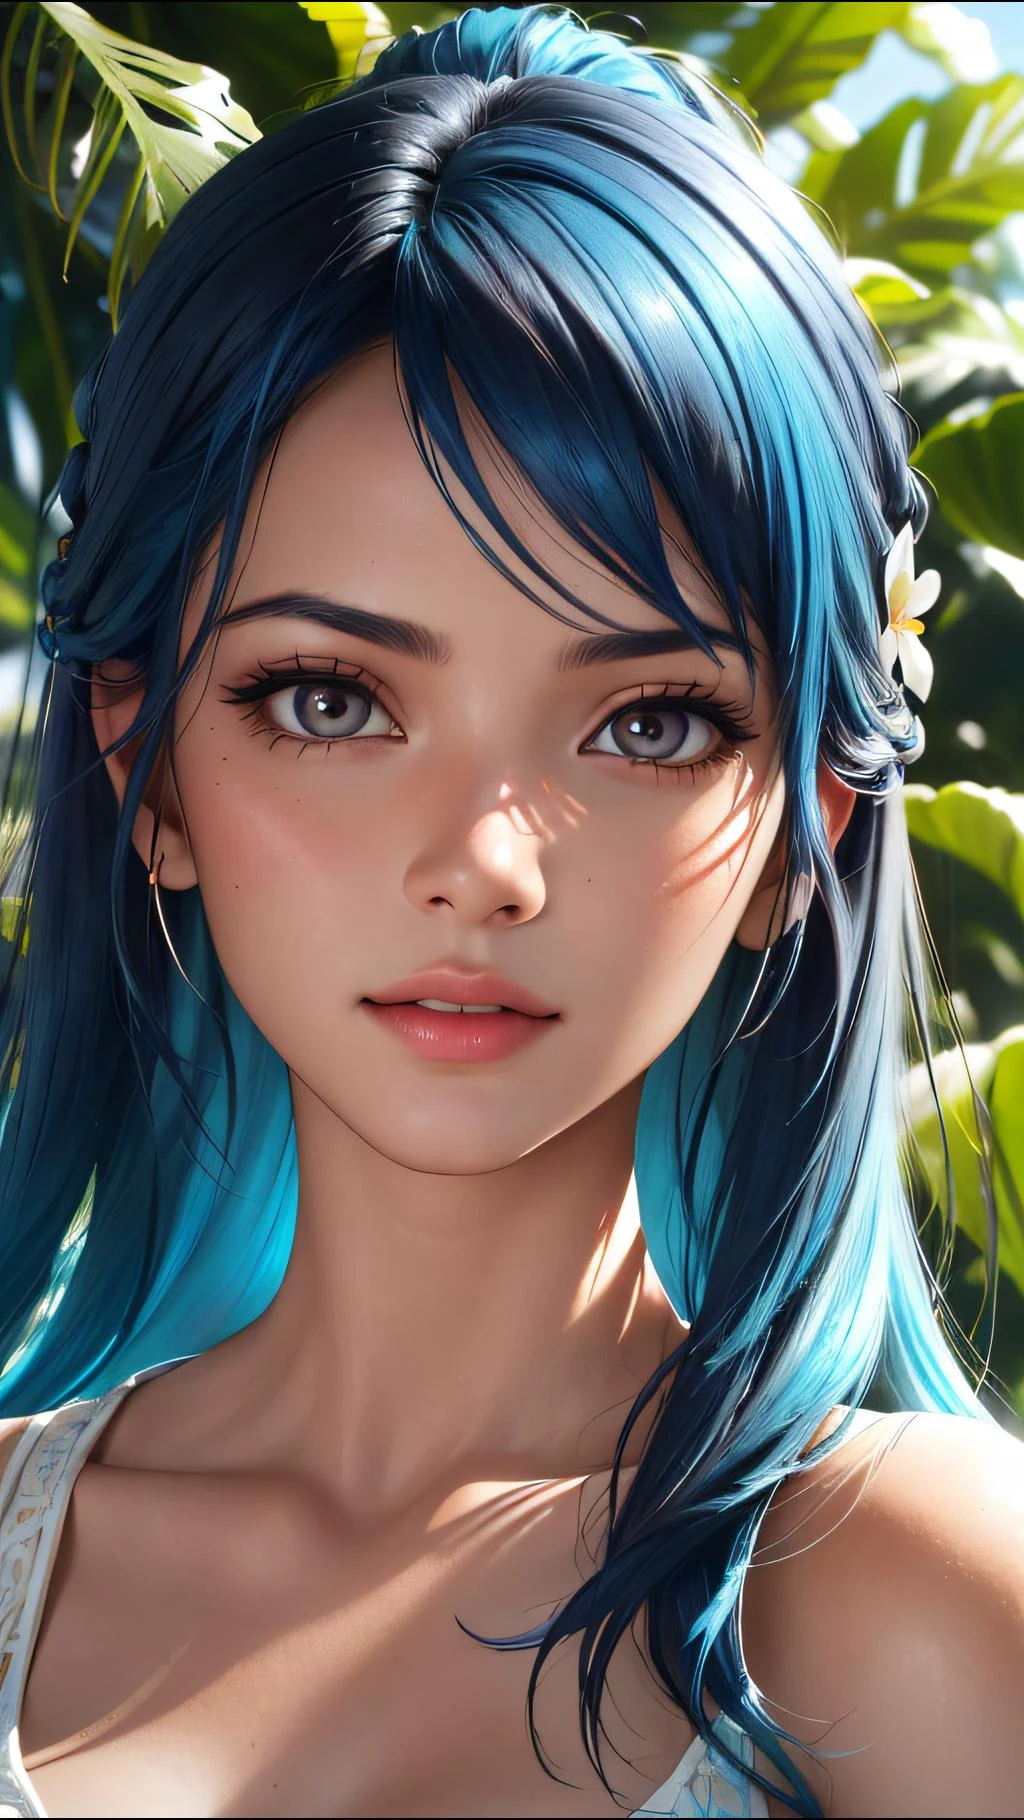 Fotografía de moda retrato de una niña india con cabello azul., en una exuberante selva con flores, representación 3d, cgi, simétrico, renderizado de octanaje, 35mm, bokeh, 9:16, (detalles intrincados:1.12), HDR, (detalles intrincados, hyperdetallado:1.15), (textura natural de la piel, hyperrealism, Luz tenue, afilado:1.2), detallado, luz del sol pasando a través del follaje